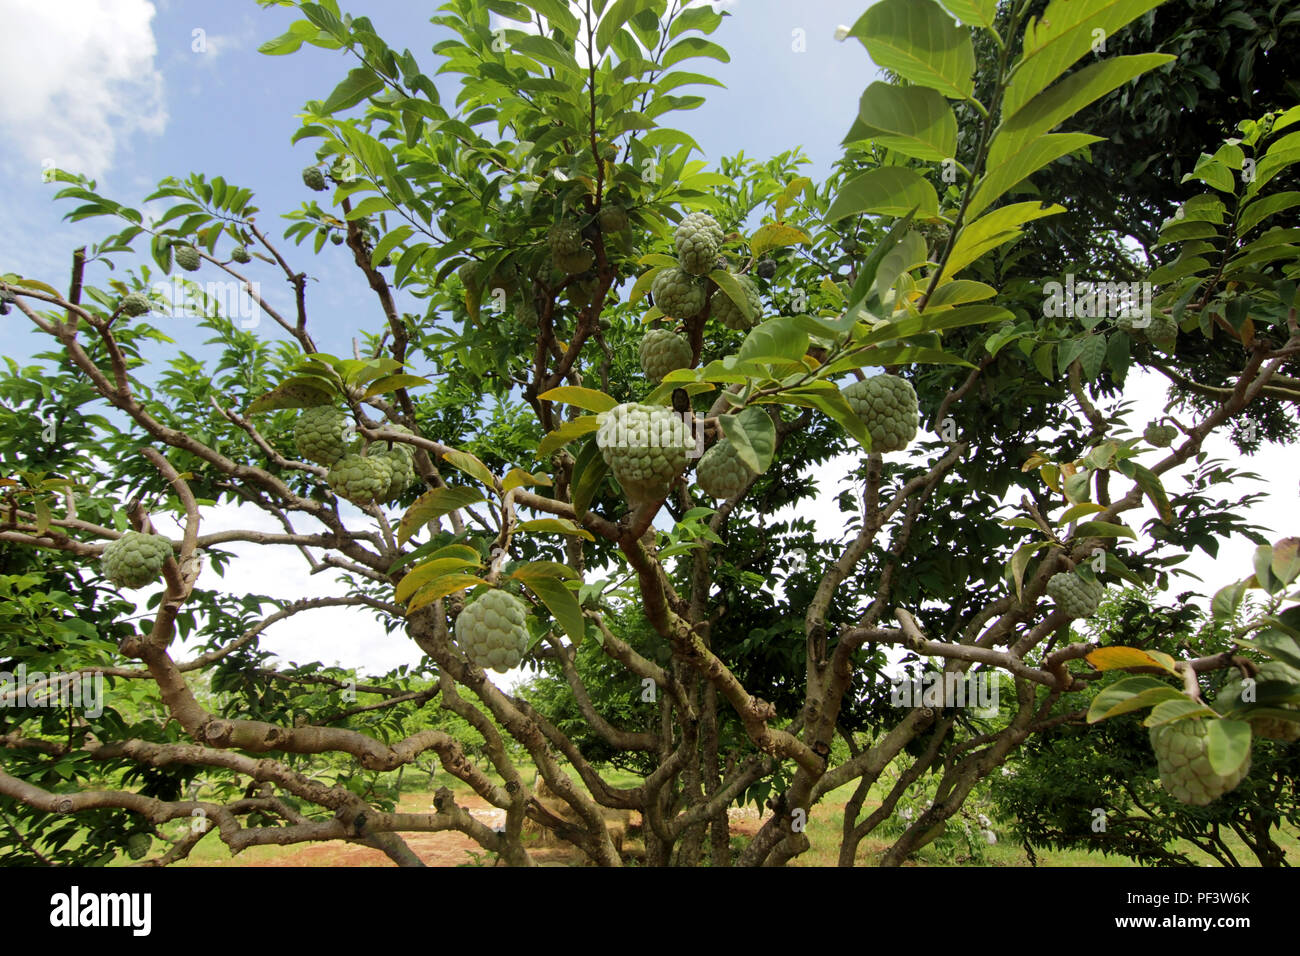 custard apple fruit on tree in organic farm Stock Photo